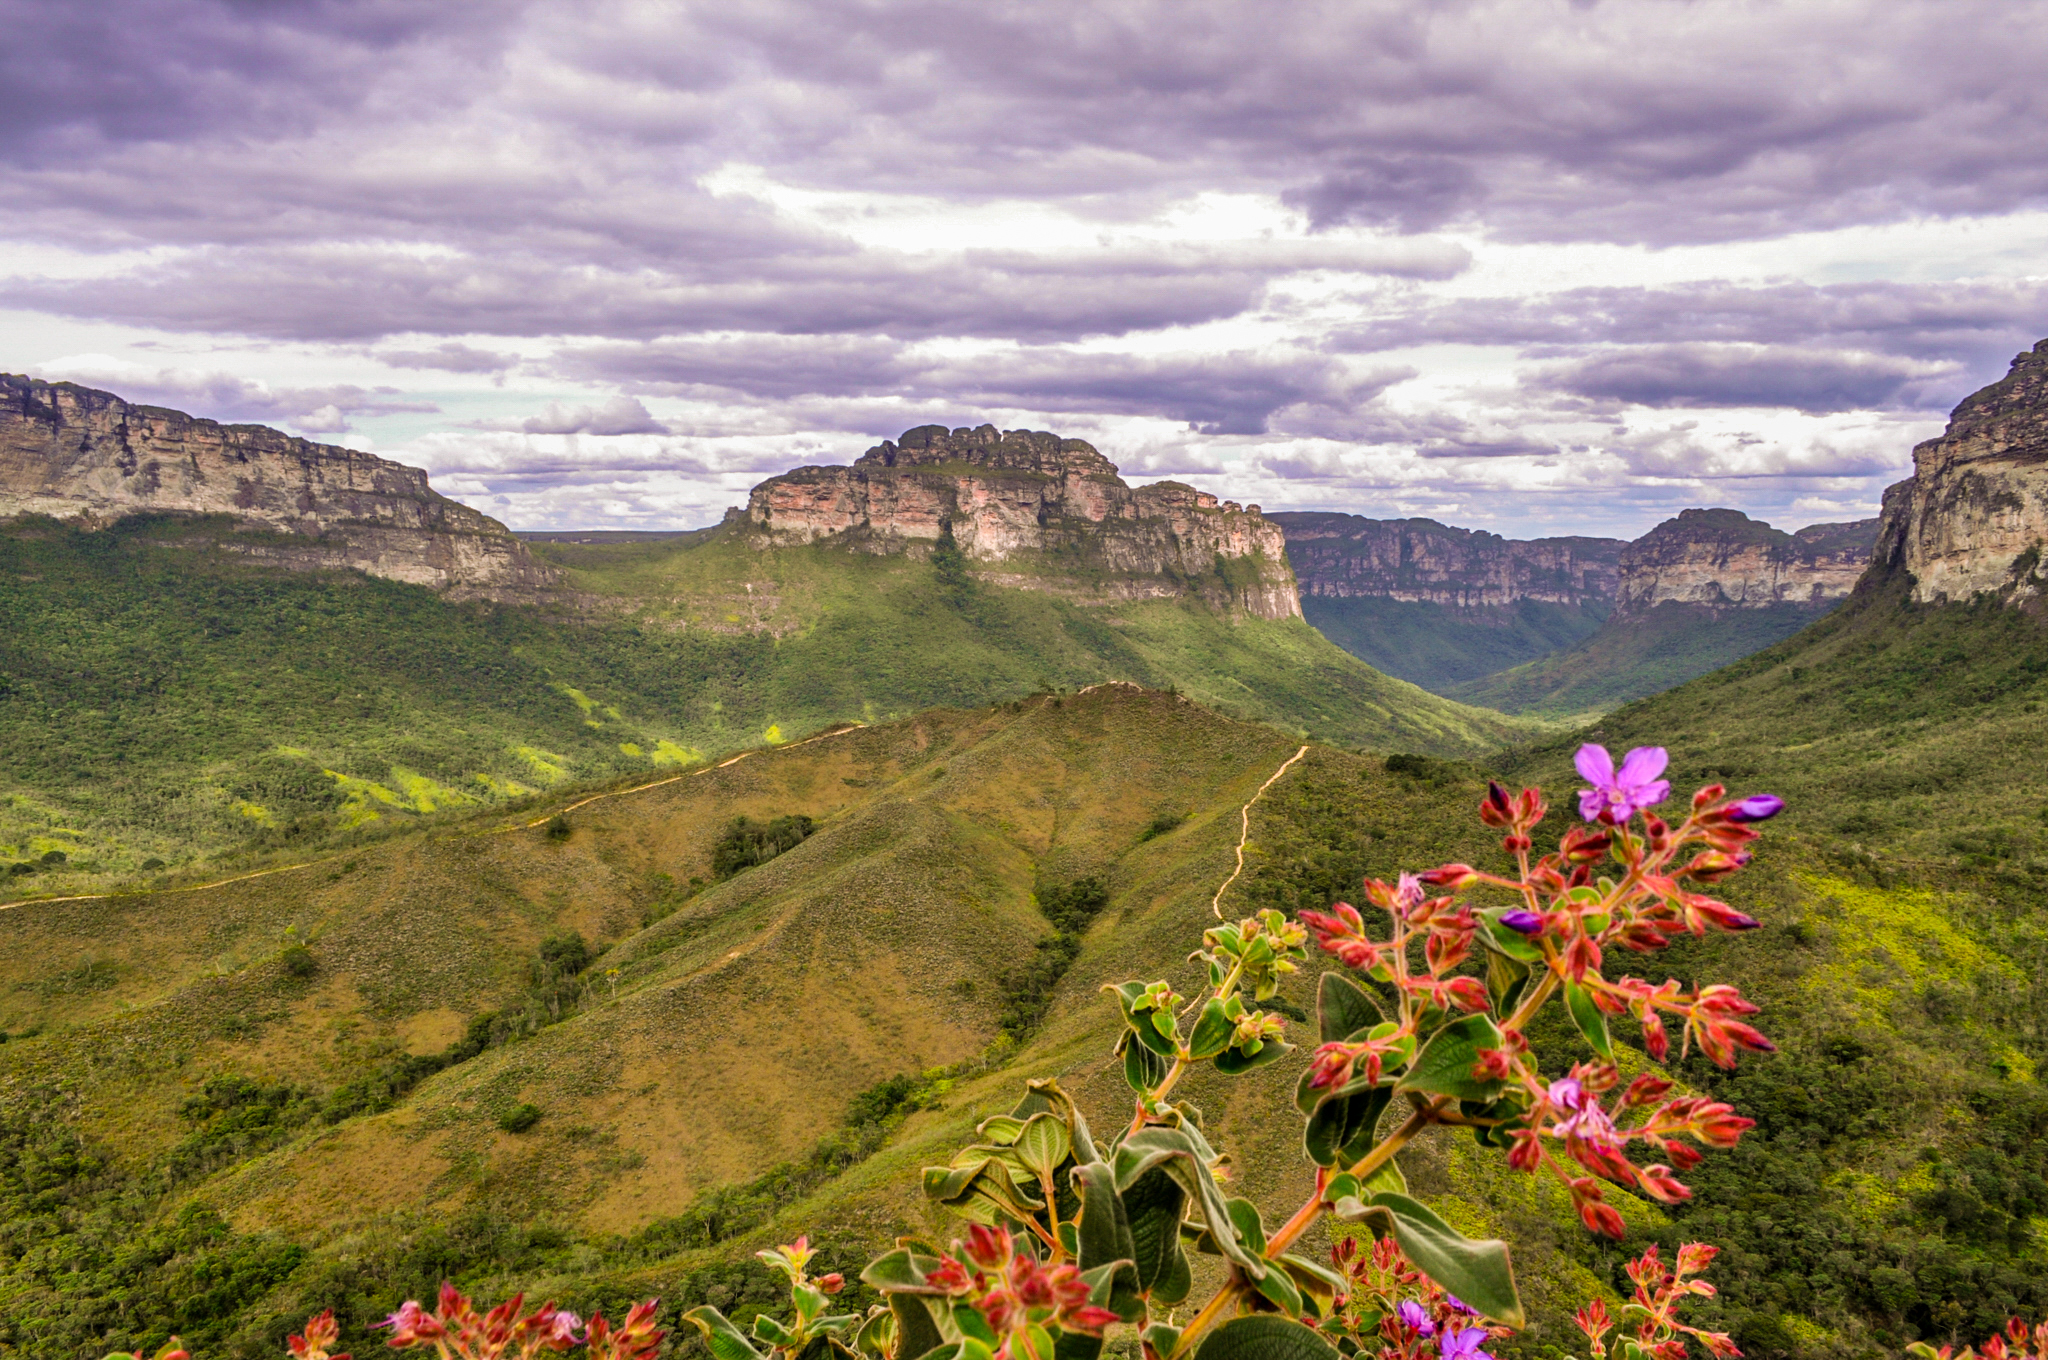 Explore o turismo de montanha no Brasil com o Conexão123 | Trecho da trilha do Vale do Pati na Chapada Diamantina | Conexão123